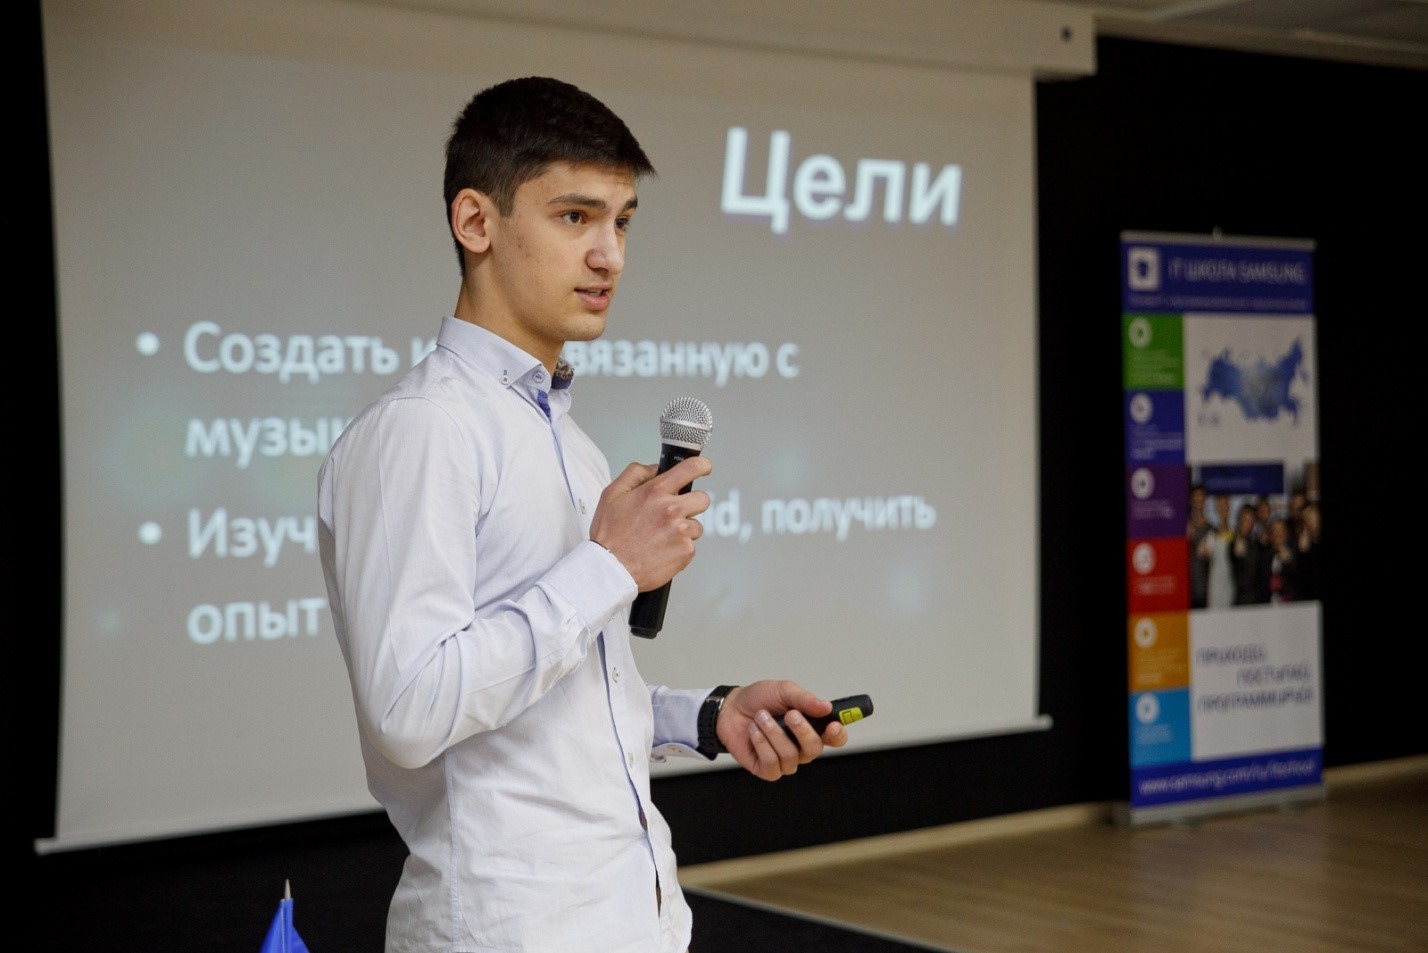 IT Школа Samsung: школьники разрабатывают мобильные приложения - 10